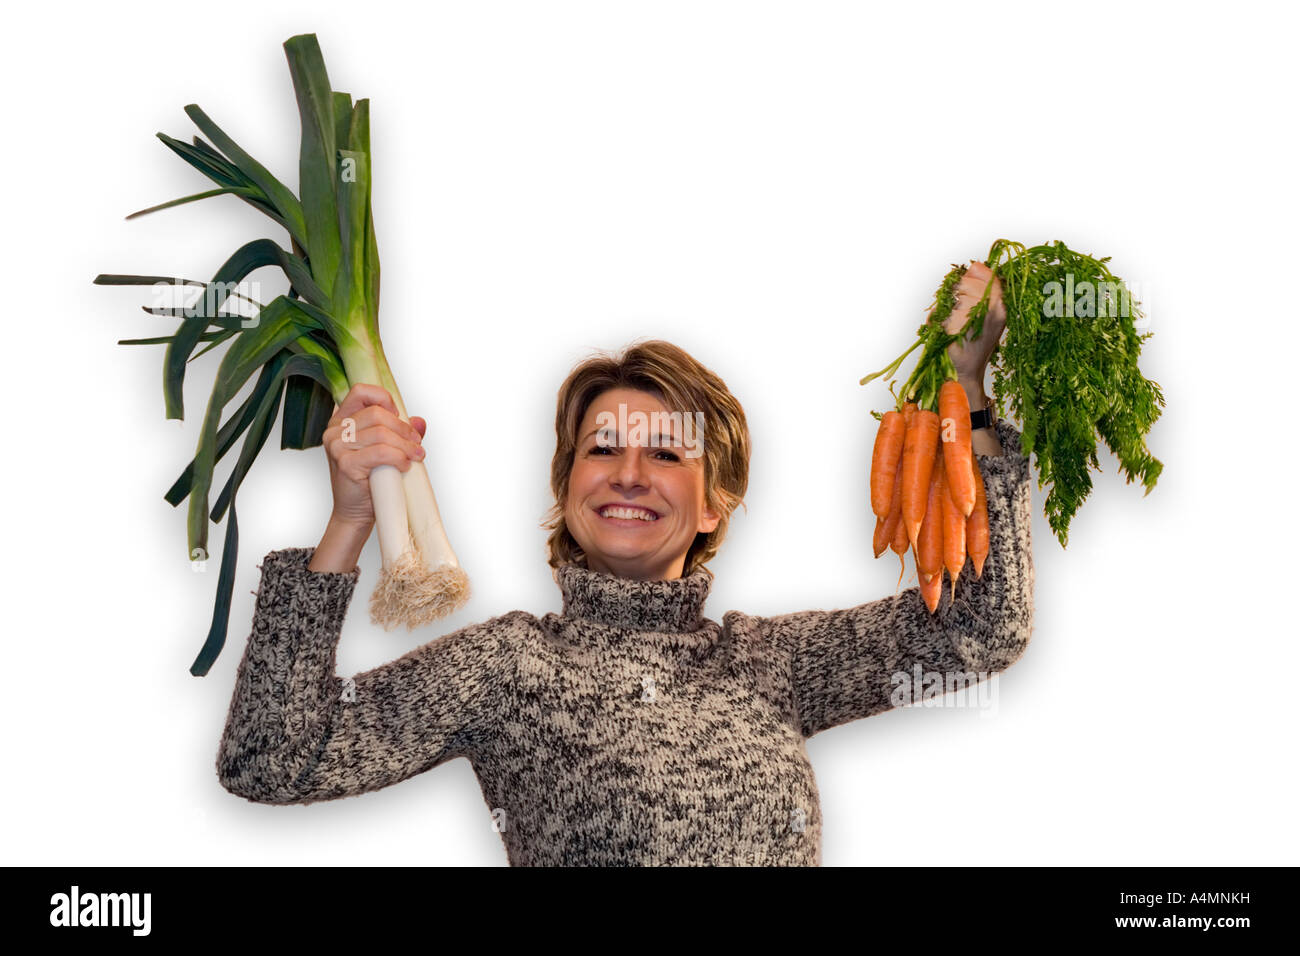 Happy young Lady brandishing organic vegetables. Joyeuse jeune femme brandissant des légumes issus de l'agriculture biologique. Stock Photo